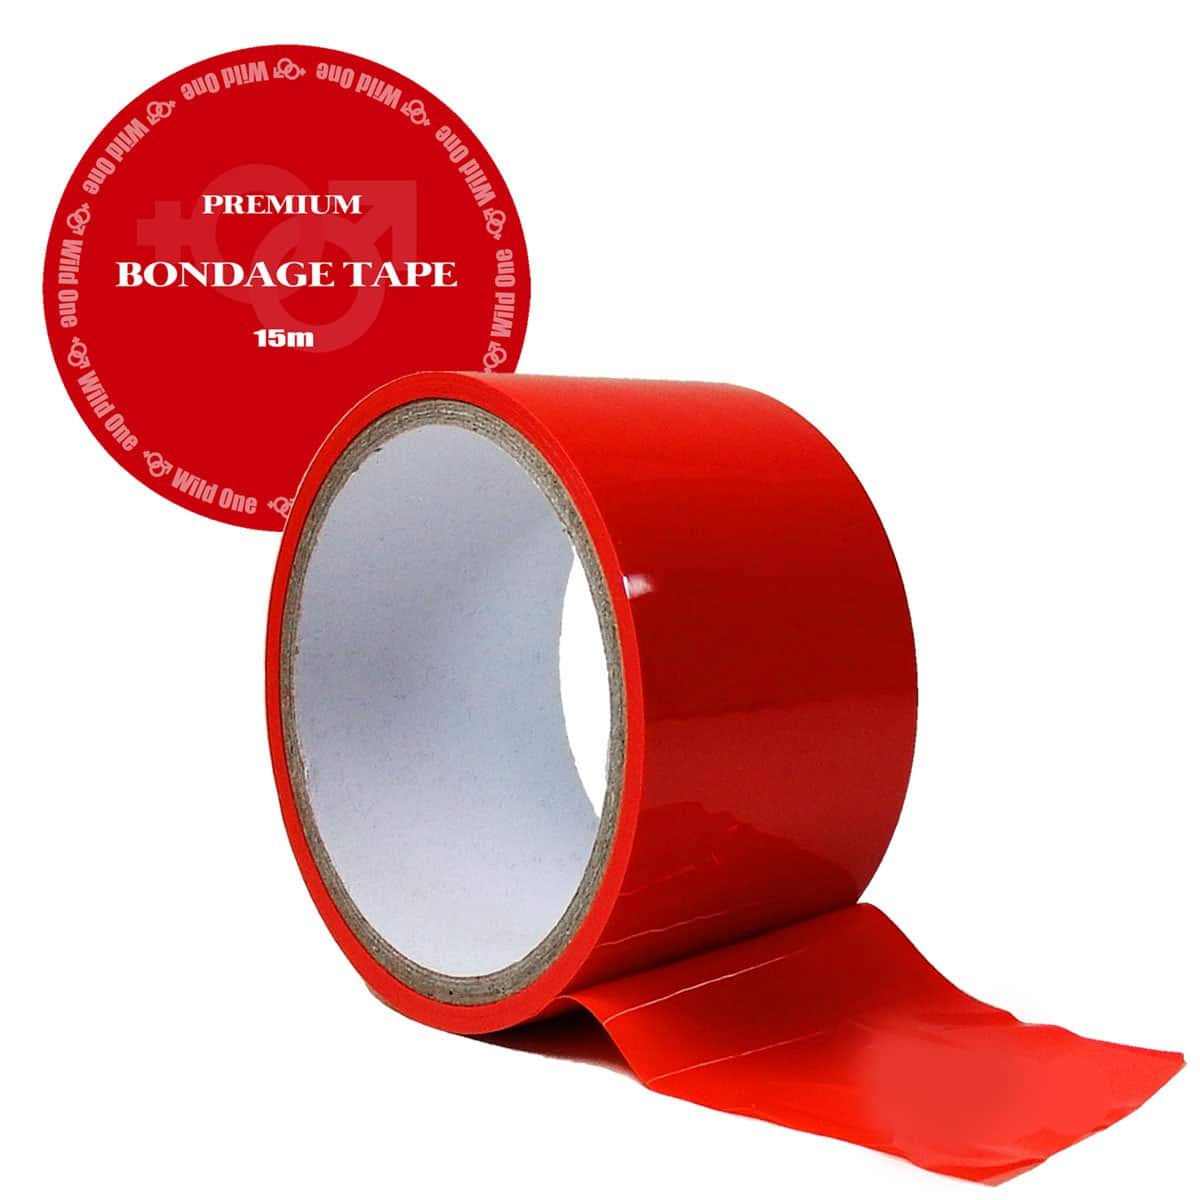 日本高级SM束缚胶带 – 红色BONDAGE TAPE